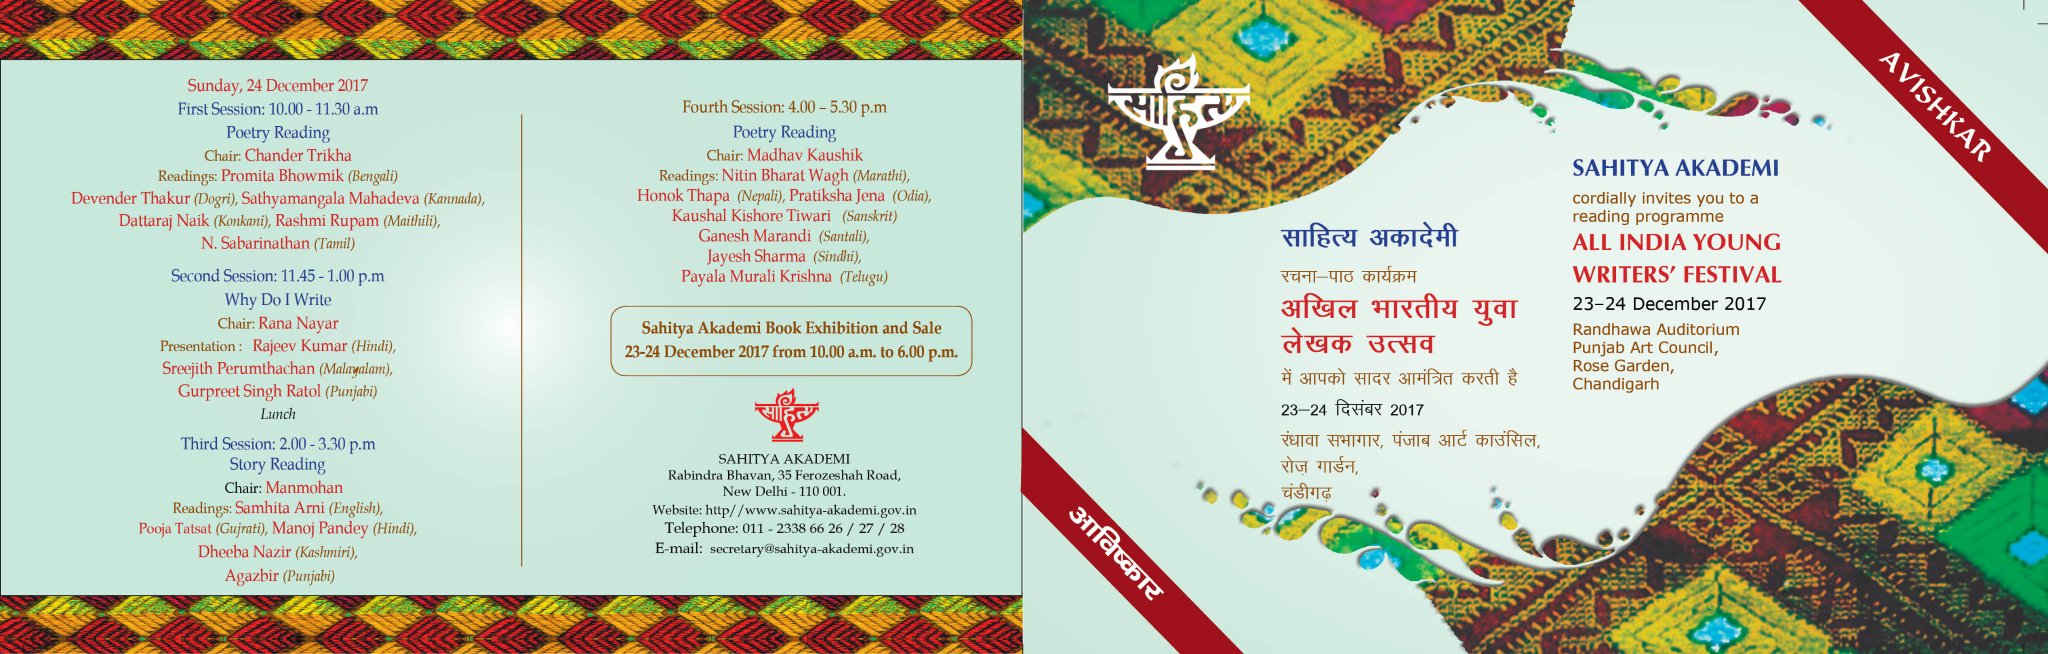 Sahitya Akademi On Twitter Sahitya Akademi Cordially Invites You